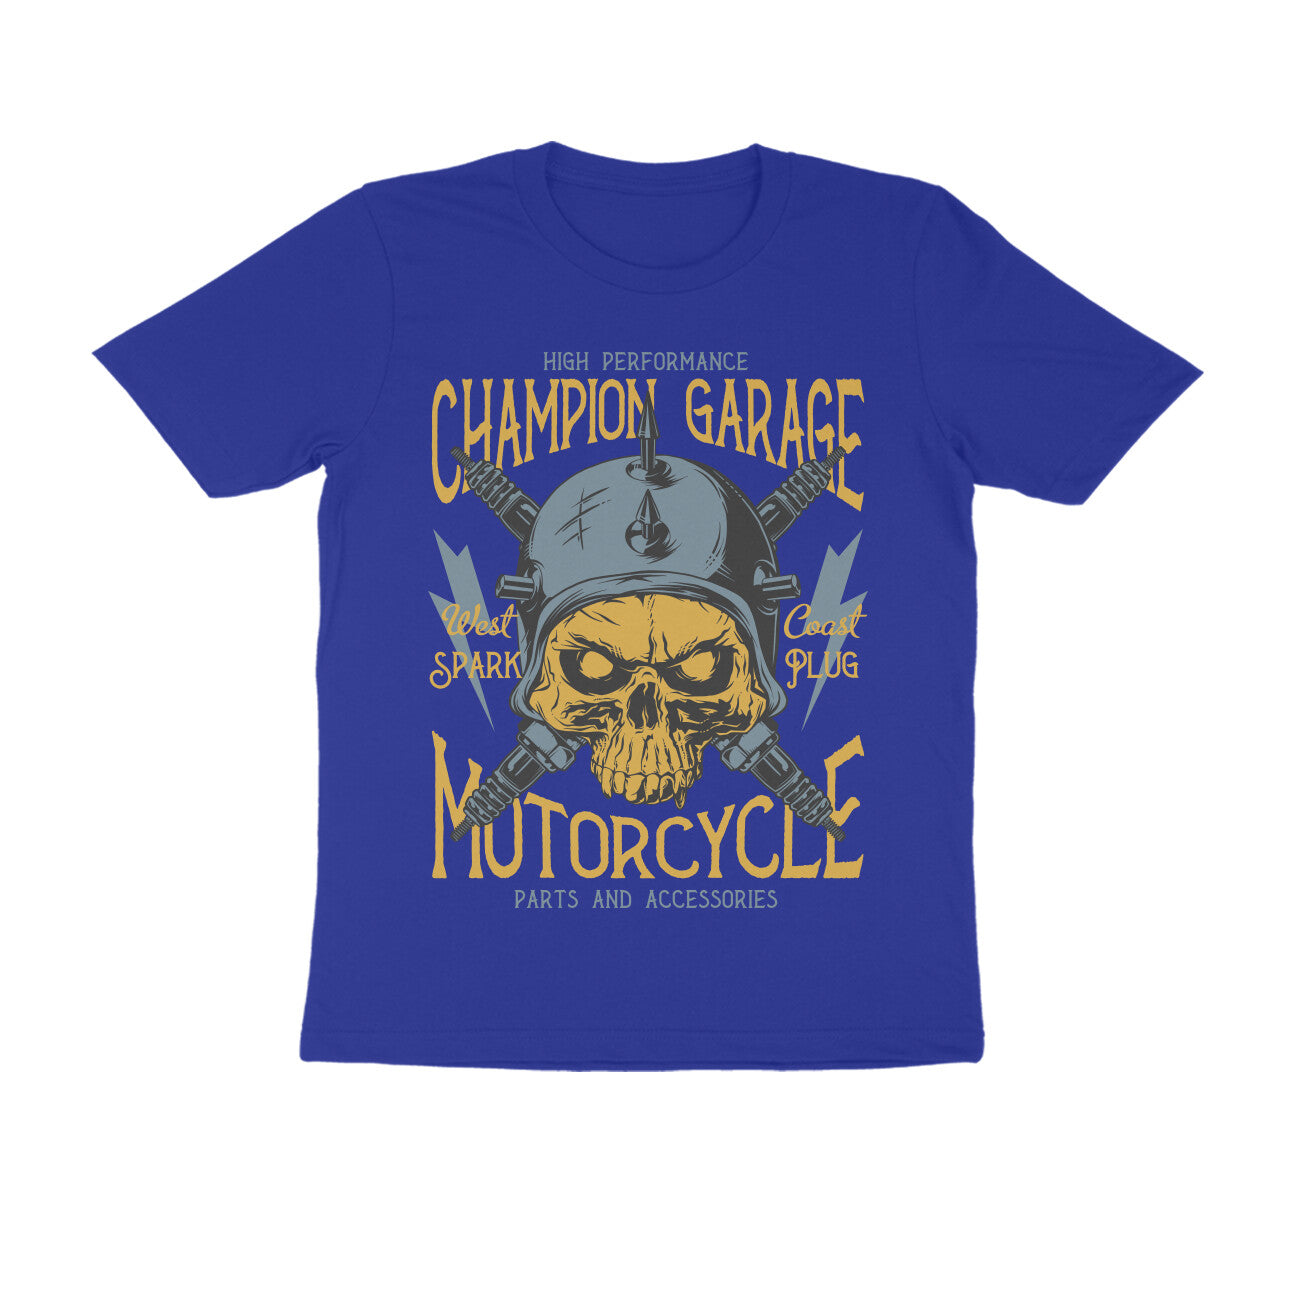 West Coast Choppers Mechanic T-Shirt Vintage blue